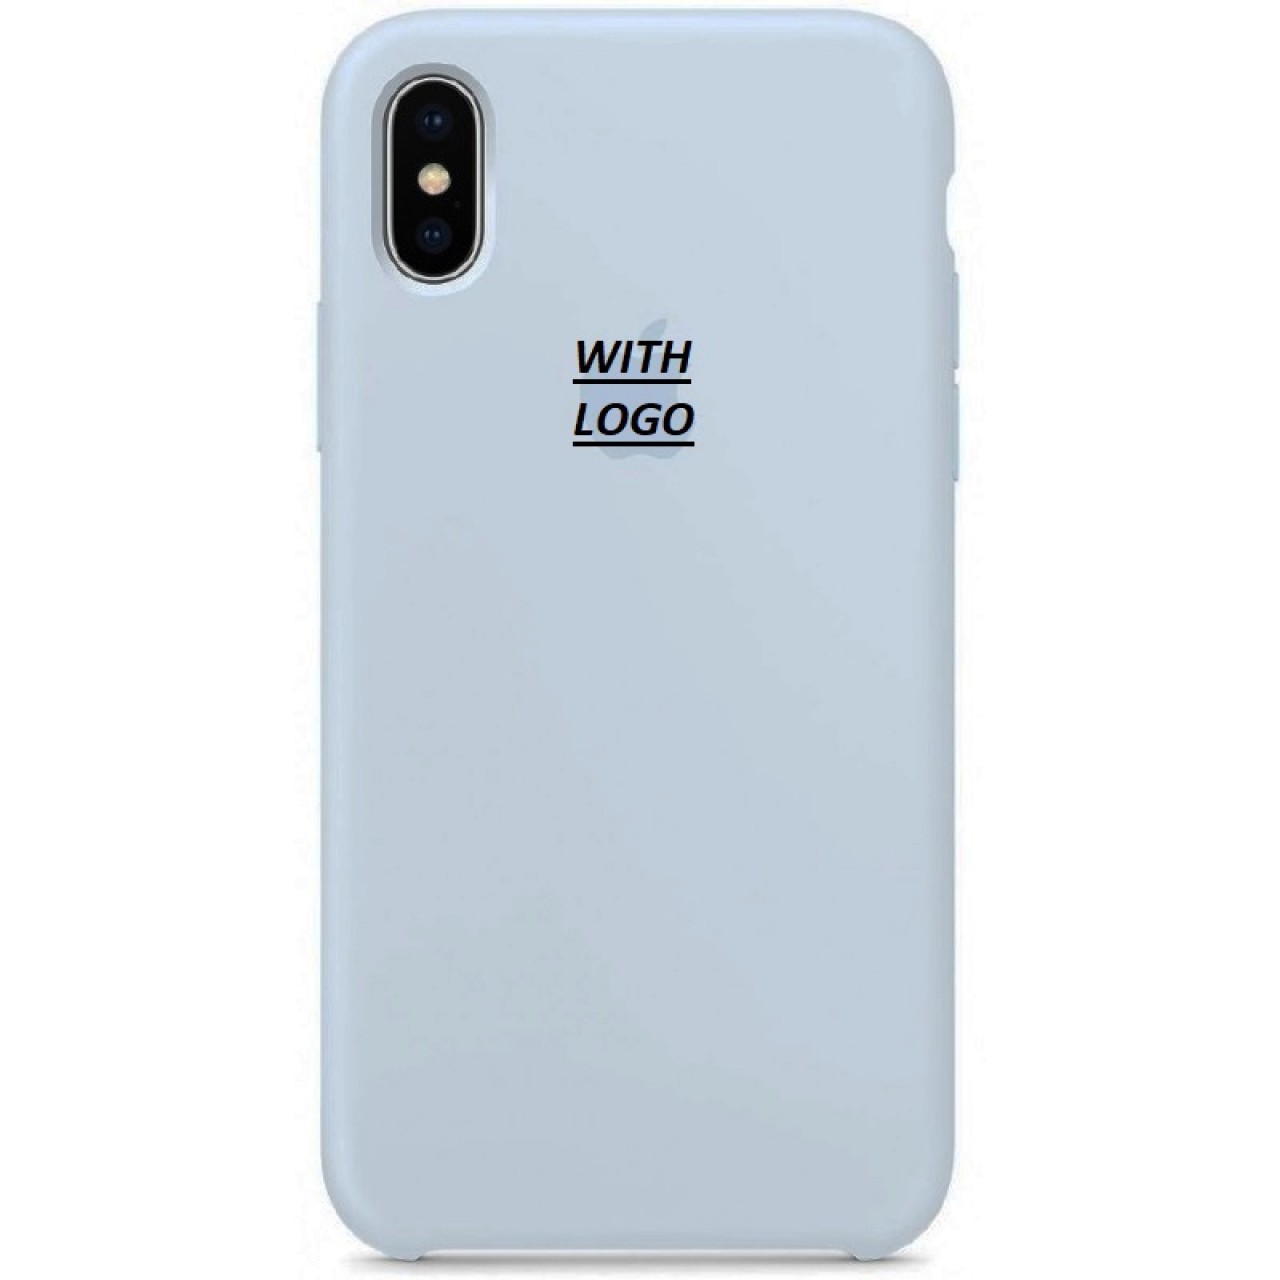 Θήκη Προστασίας Σιλικόνης iPhone XS Max - Back Cover Silicone Case - Light Grey